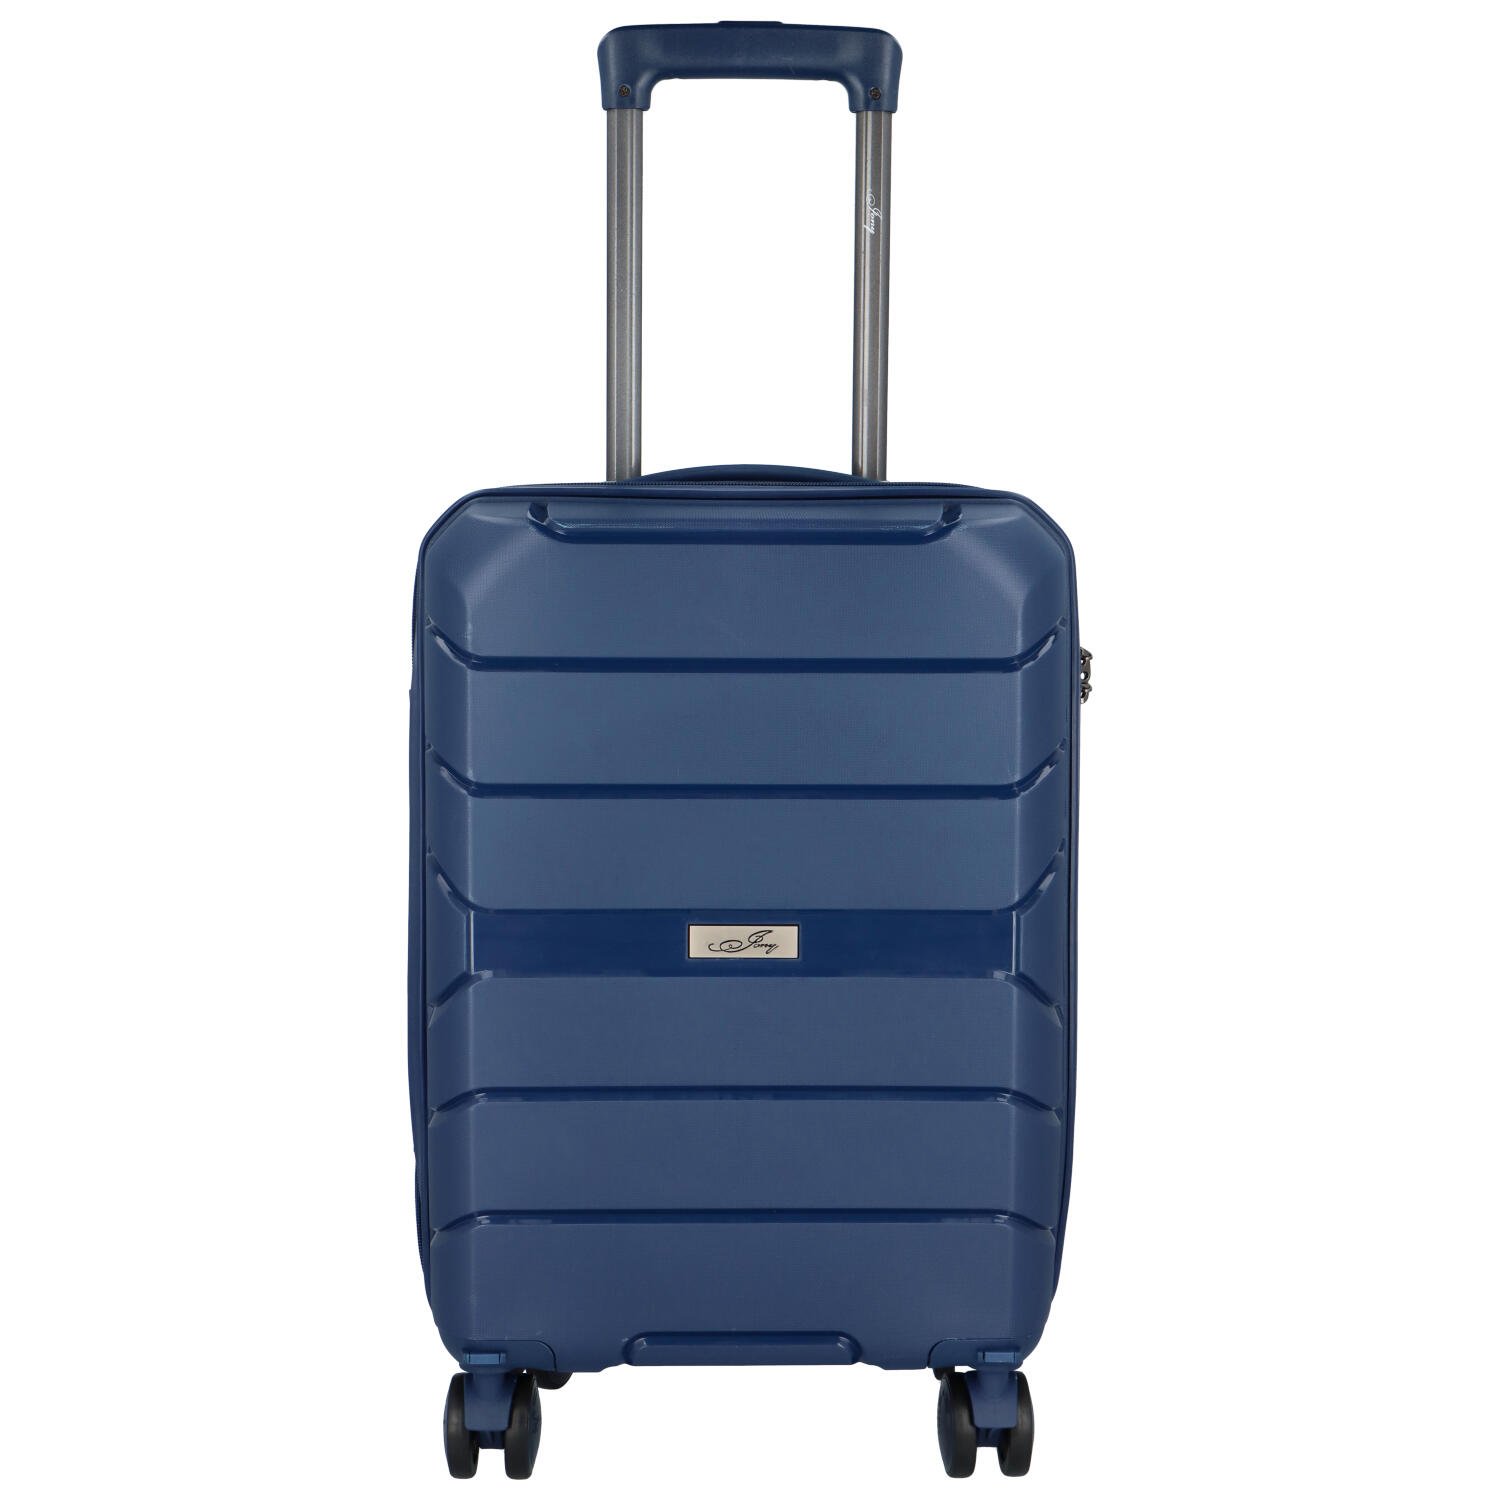 Cestovní plastový kufr Franco velikosti XS, modrý